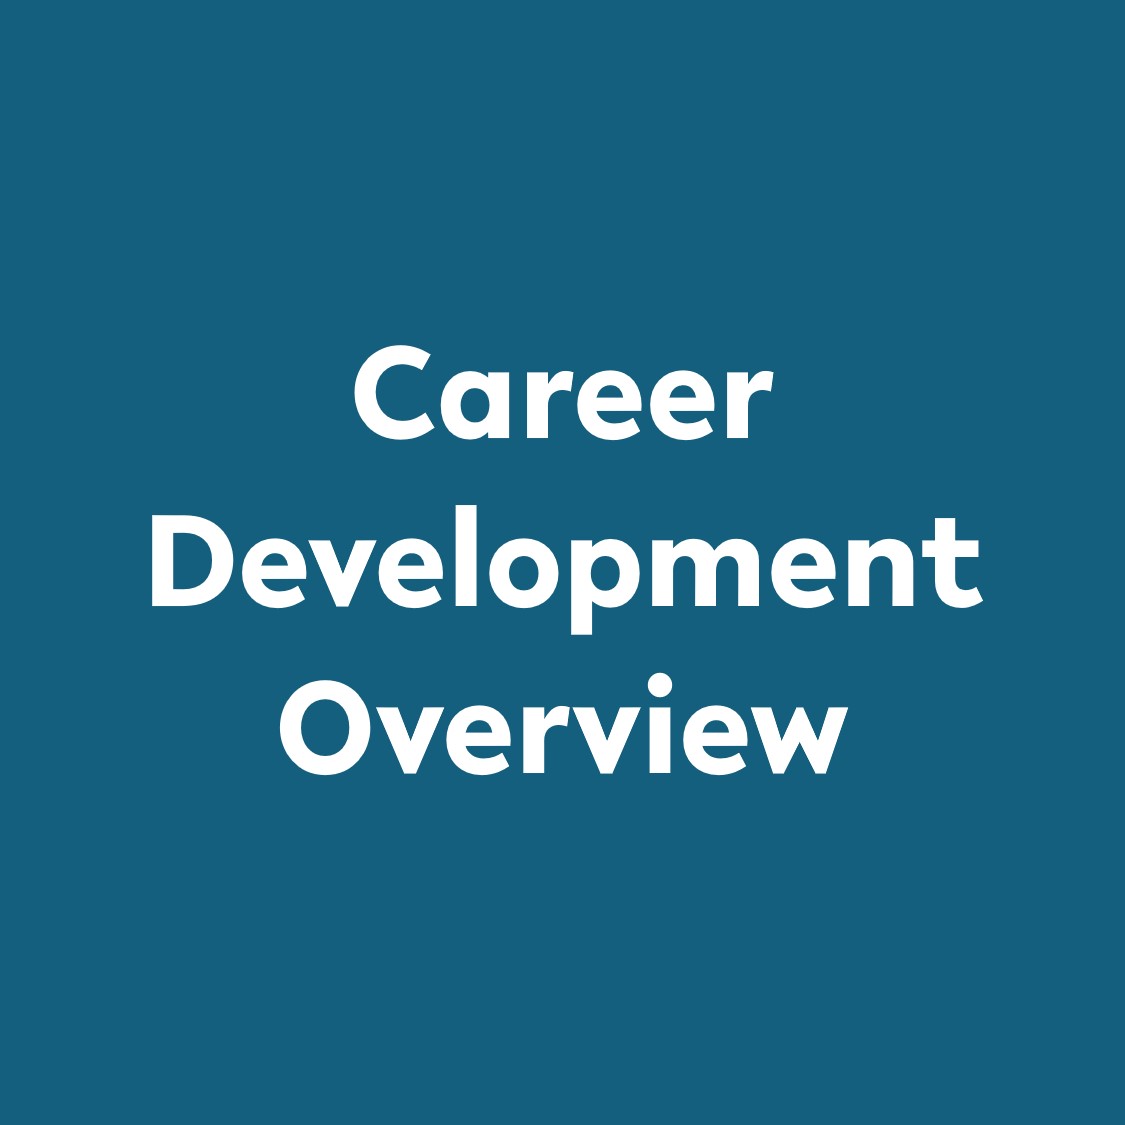 Career Development Overview